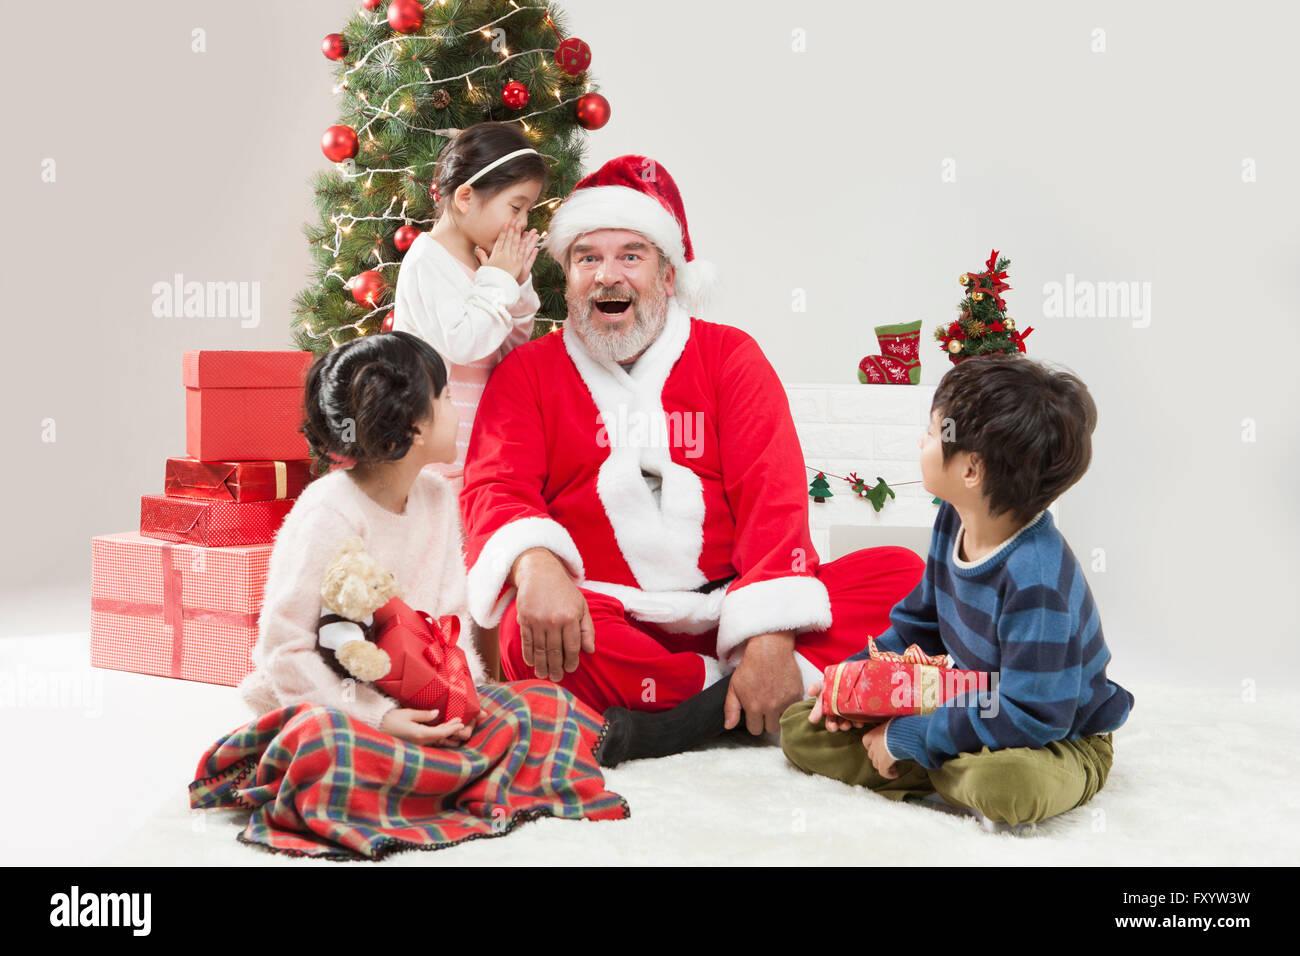 Ragazza sorridente e Santa Claus parlando in un sussurro, un ragazzo e una ragazza a guardarli a Natale Foto Stock